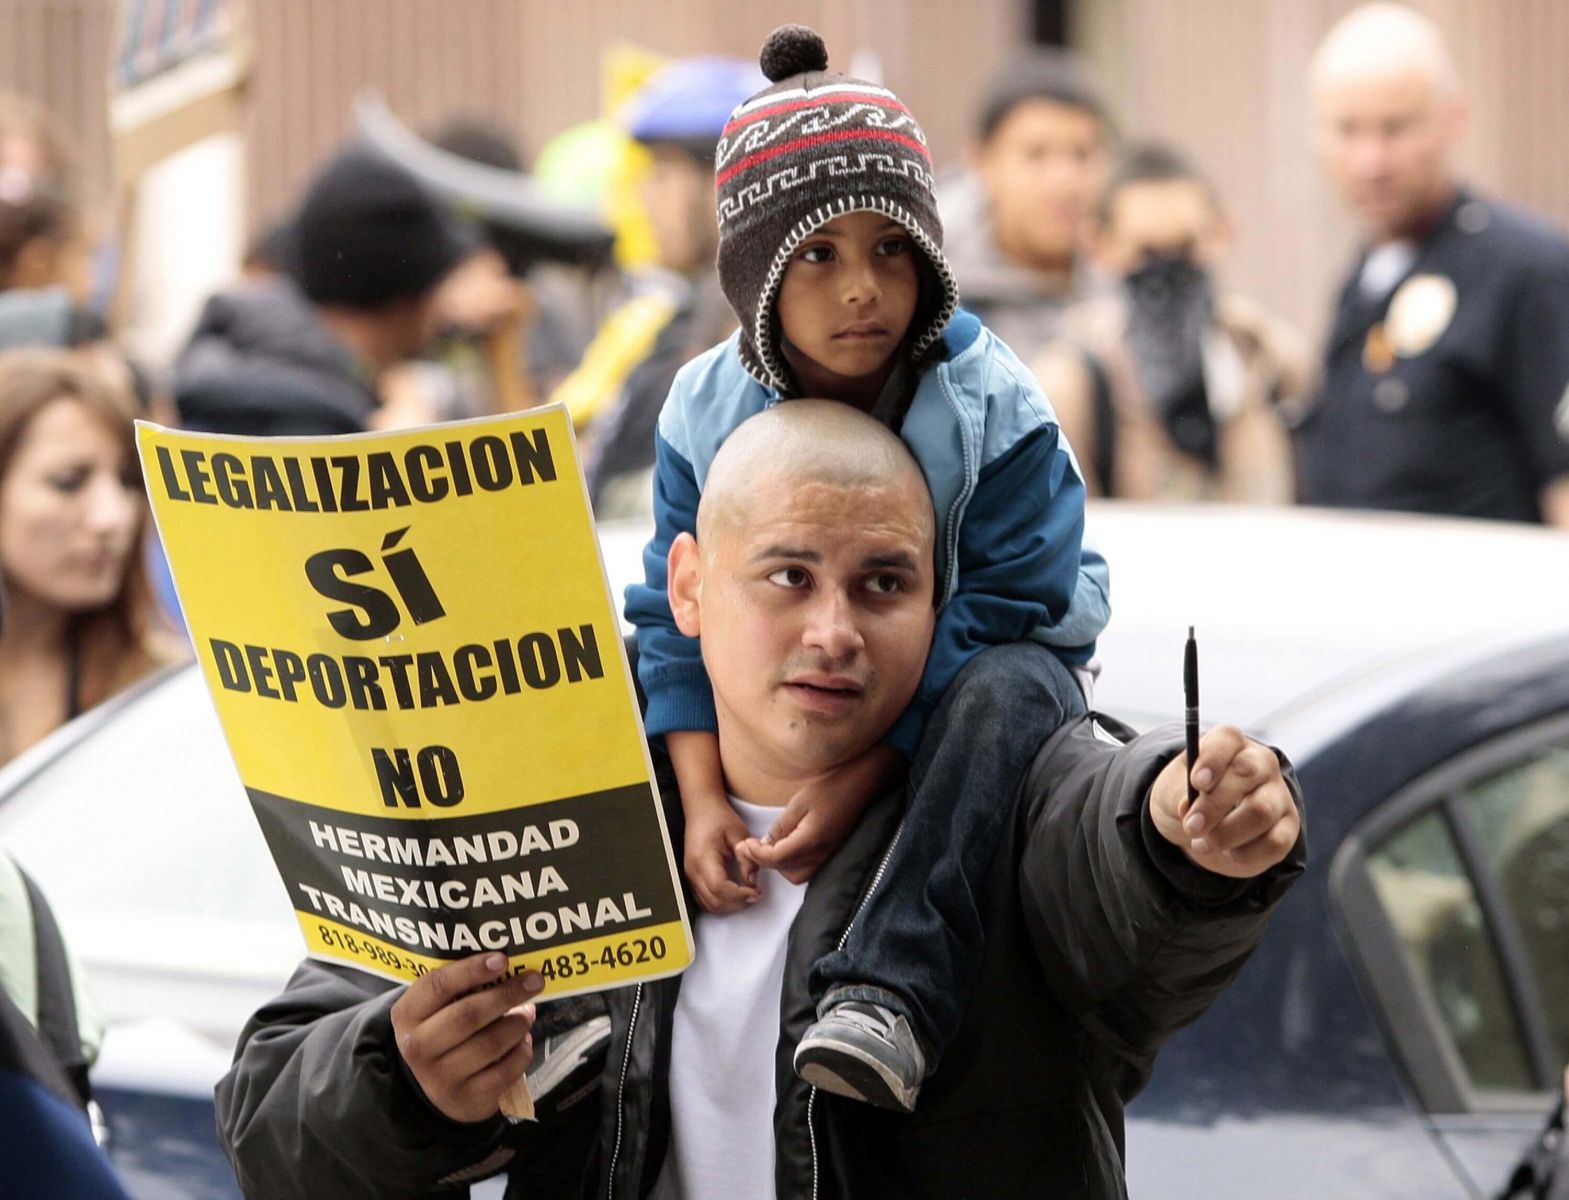 La deportación de latinos en EE.UU., ya afecta a Canadá